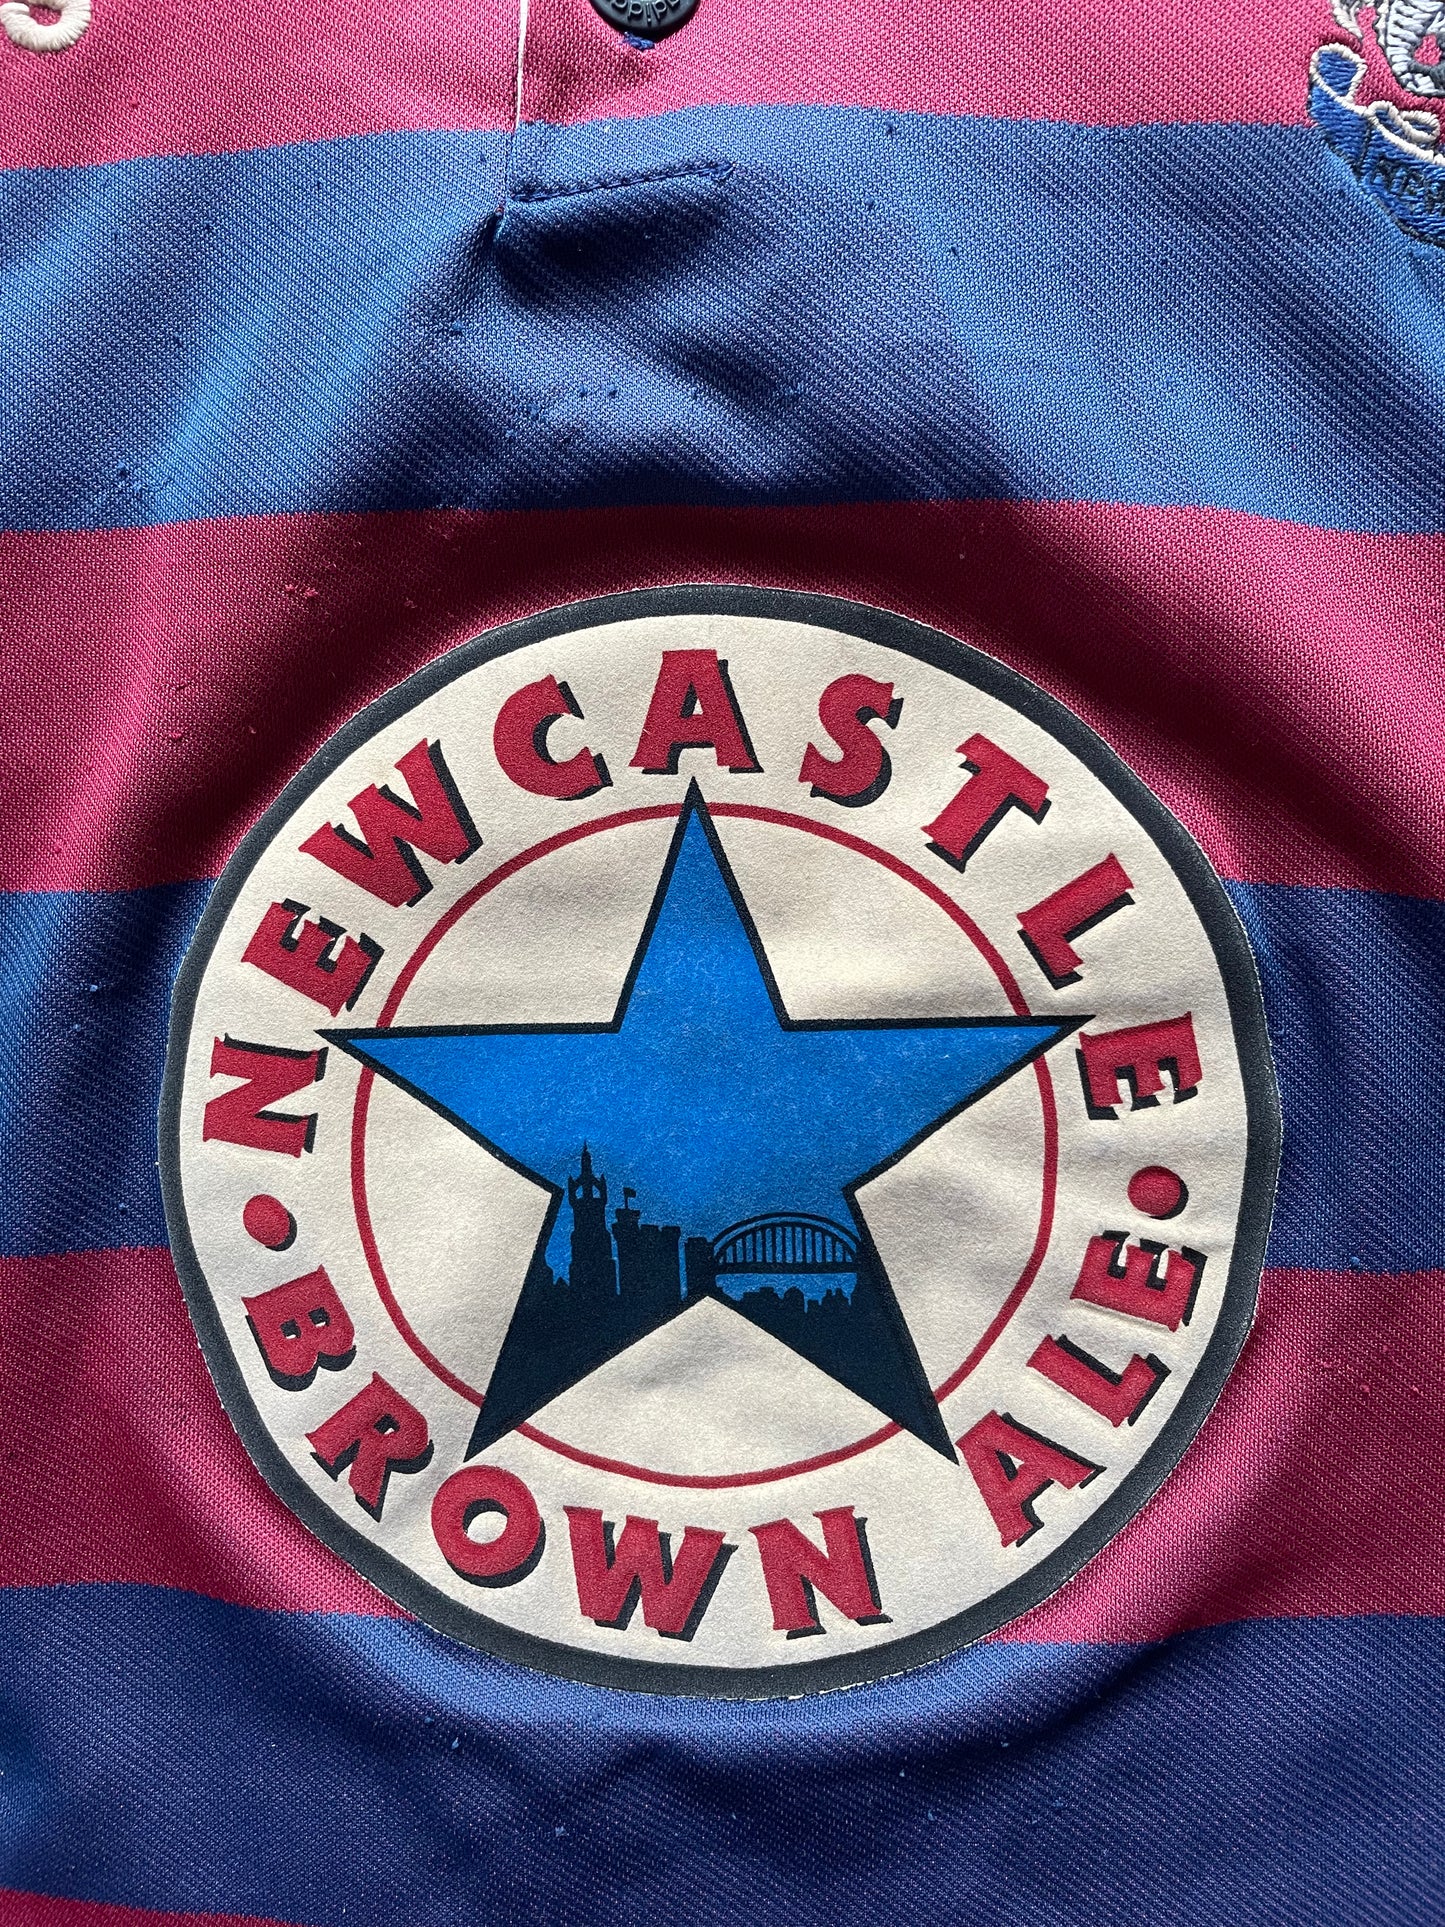 Newcastle 1995 Away Shirt (average) Adults Small